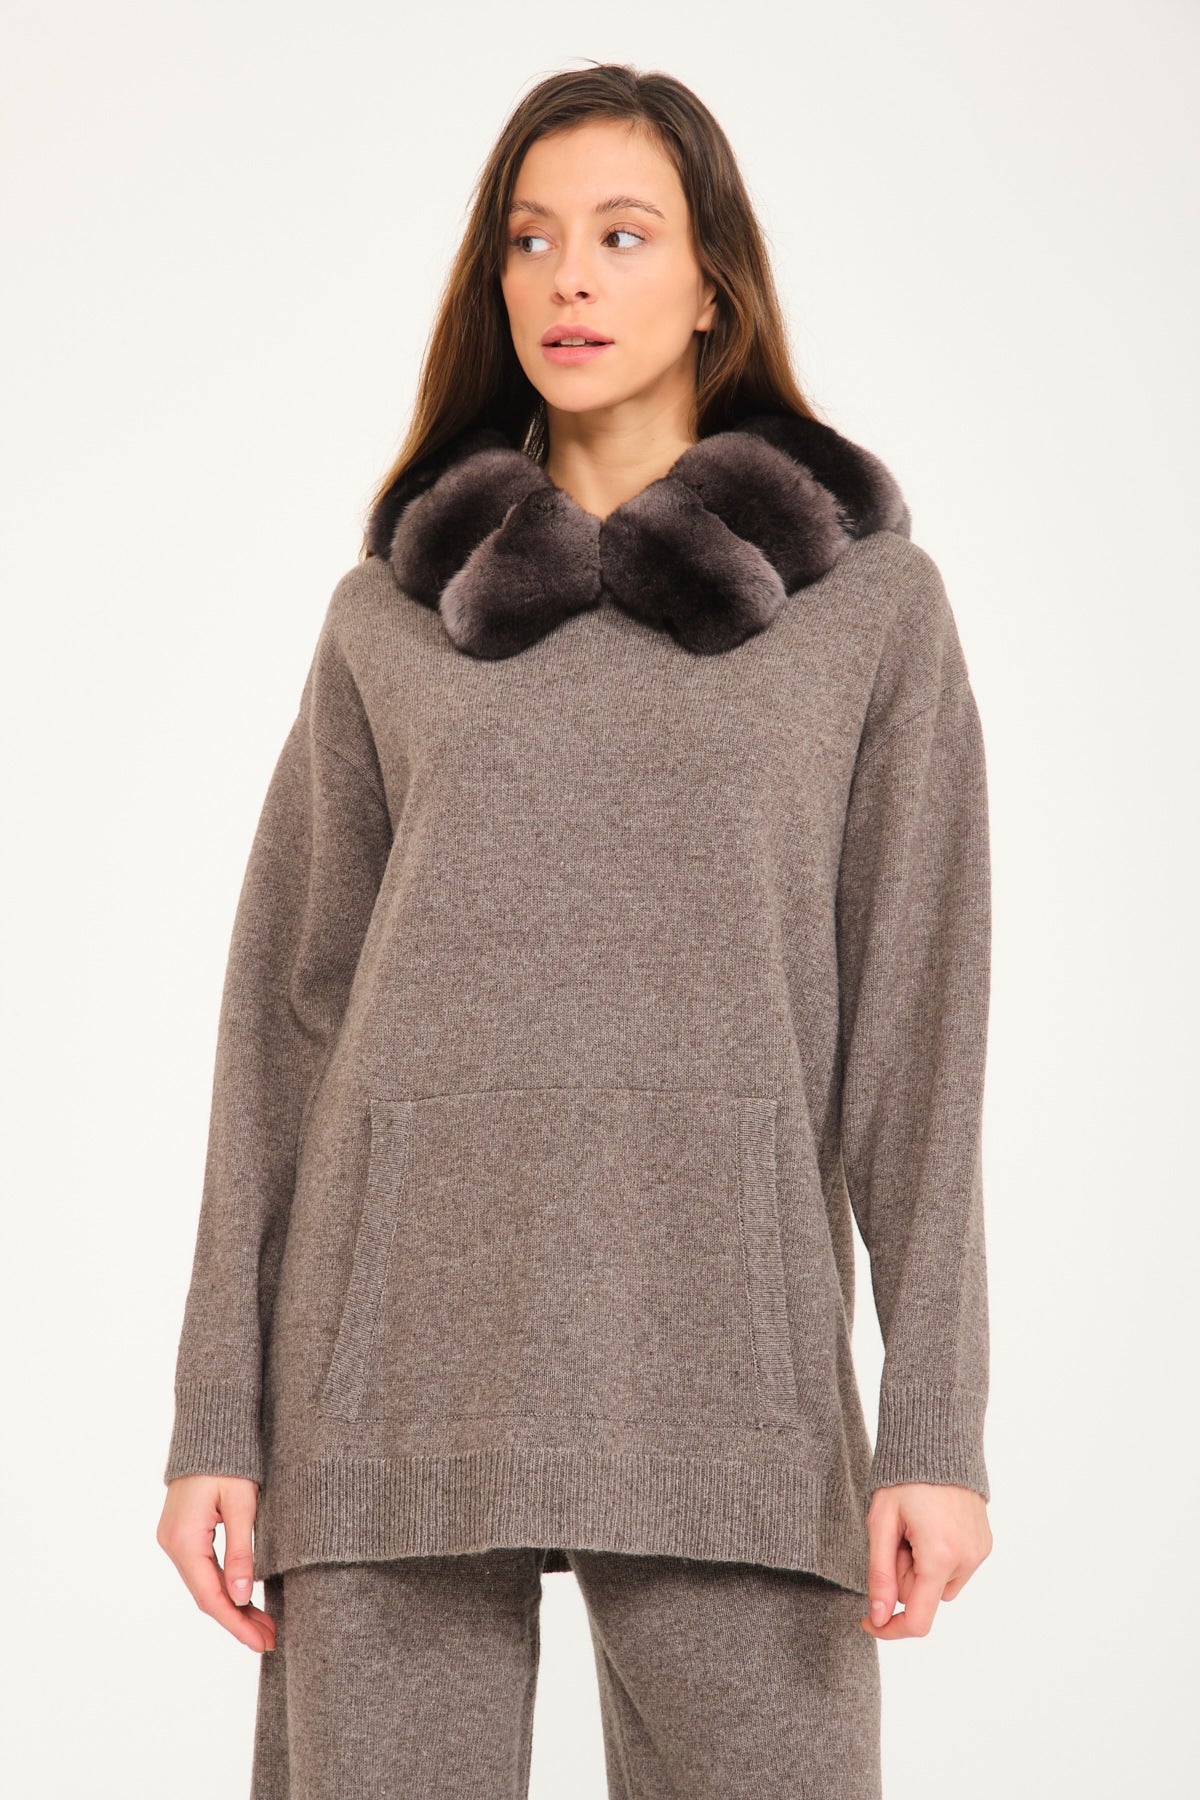 Mink Fur Jacket Sweater Pullover Women's